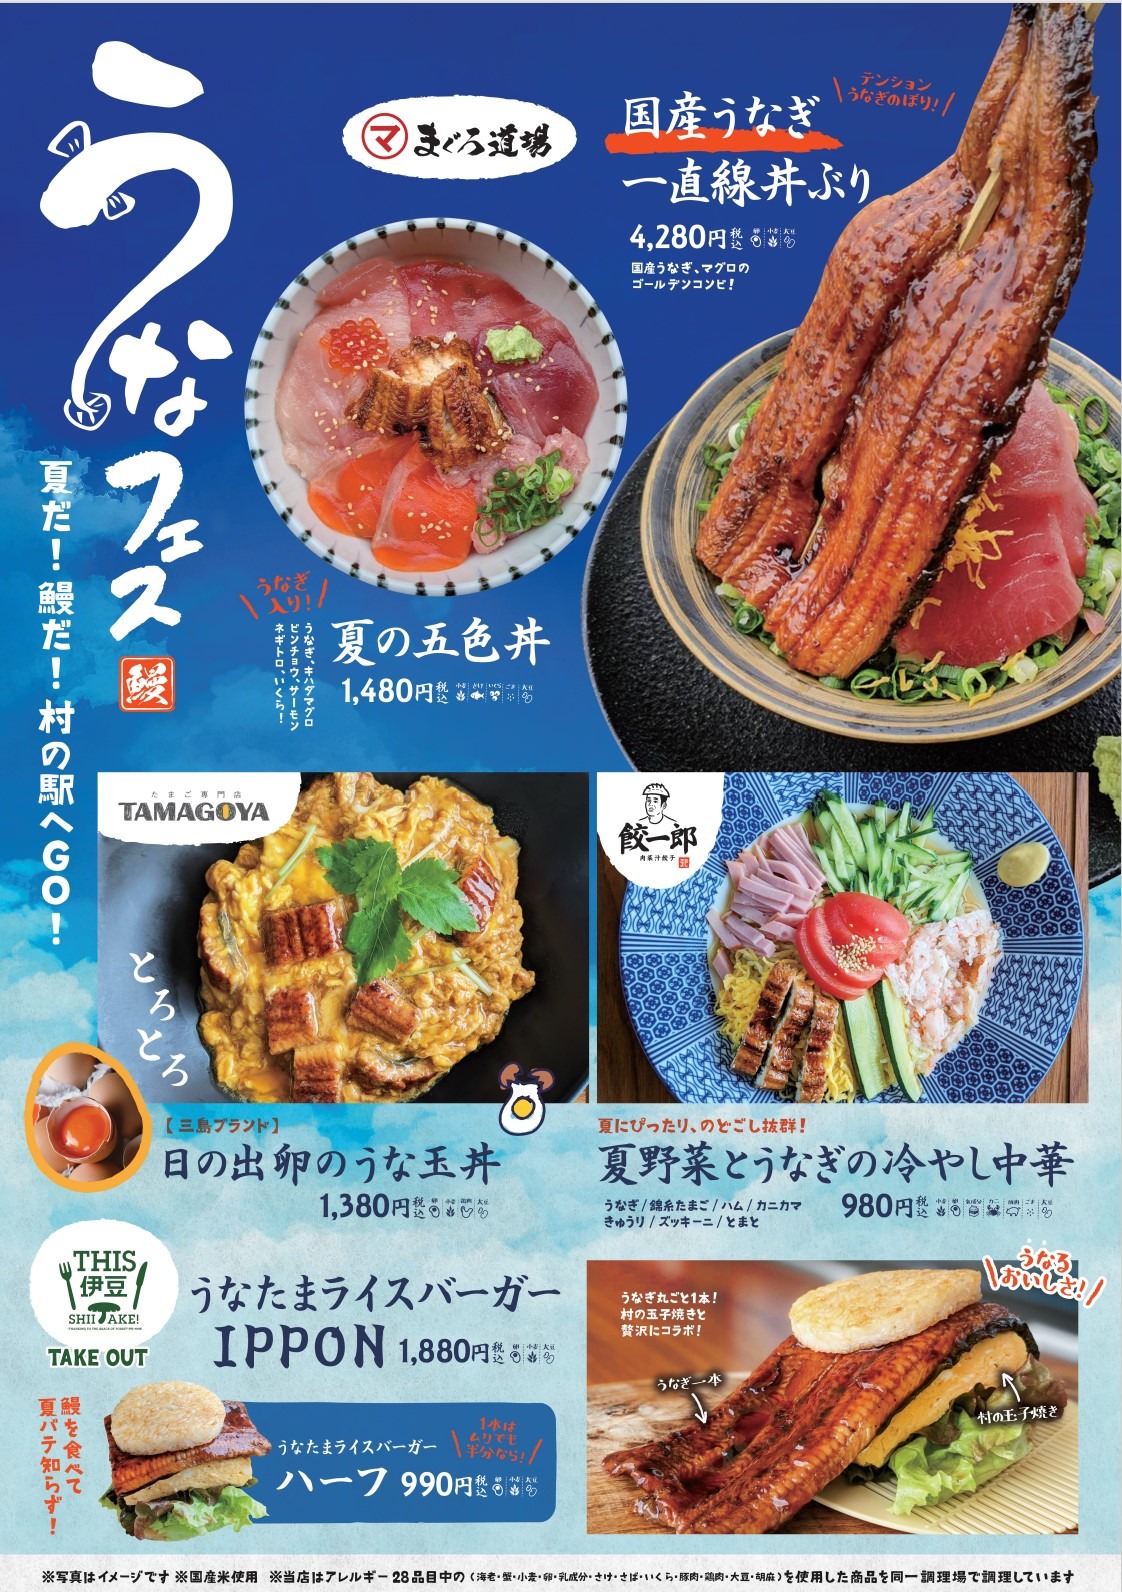 伊豆 村の駅で うなフェス 開催 うなぎテーマの新メニューを4店舗が発売 Rbb Today